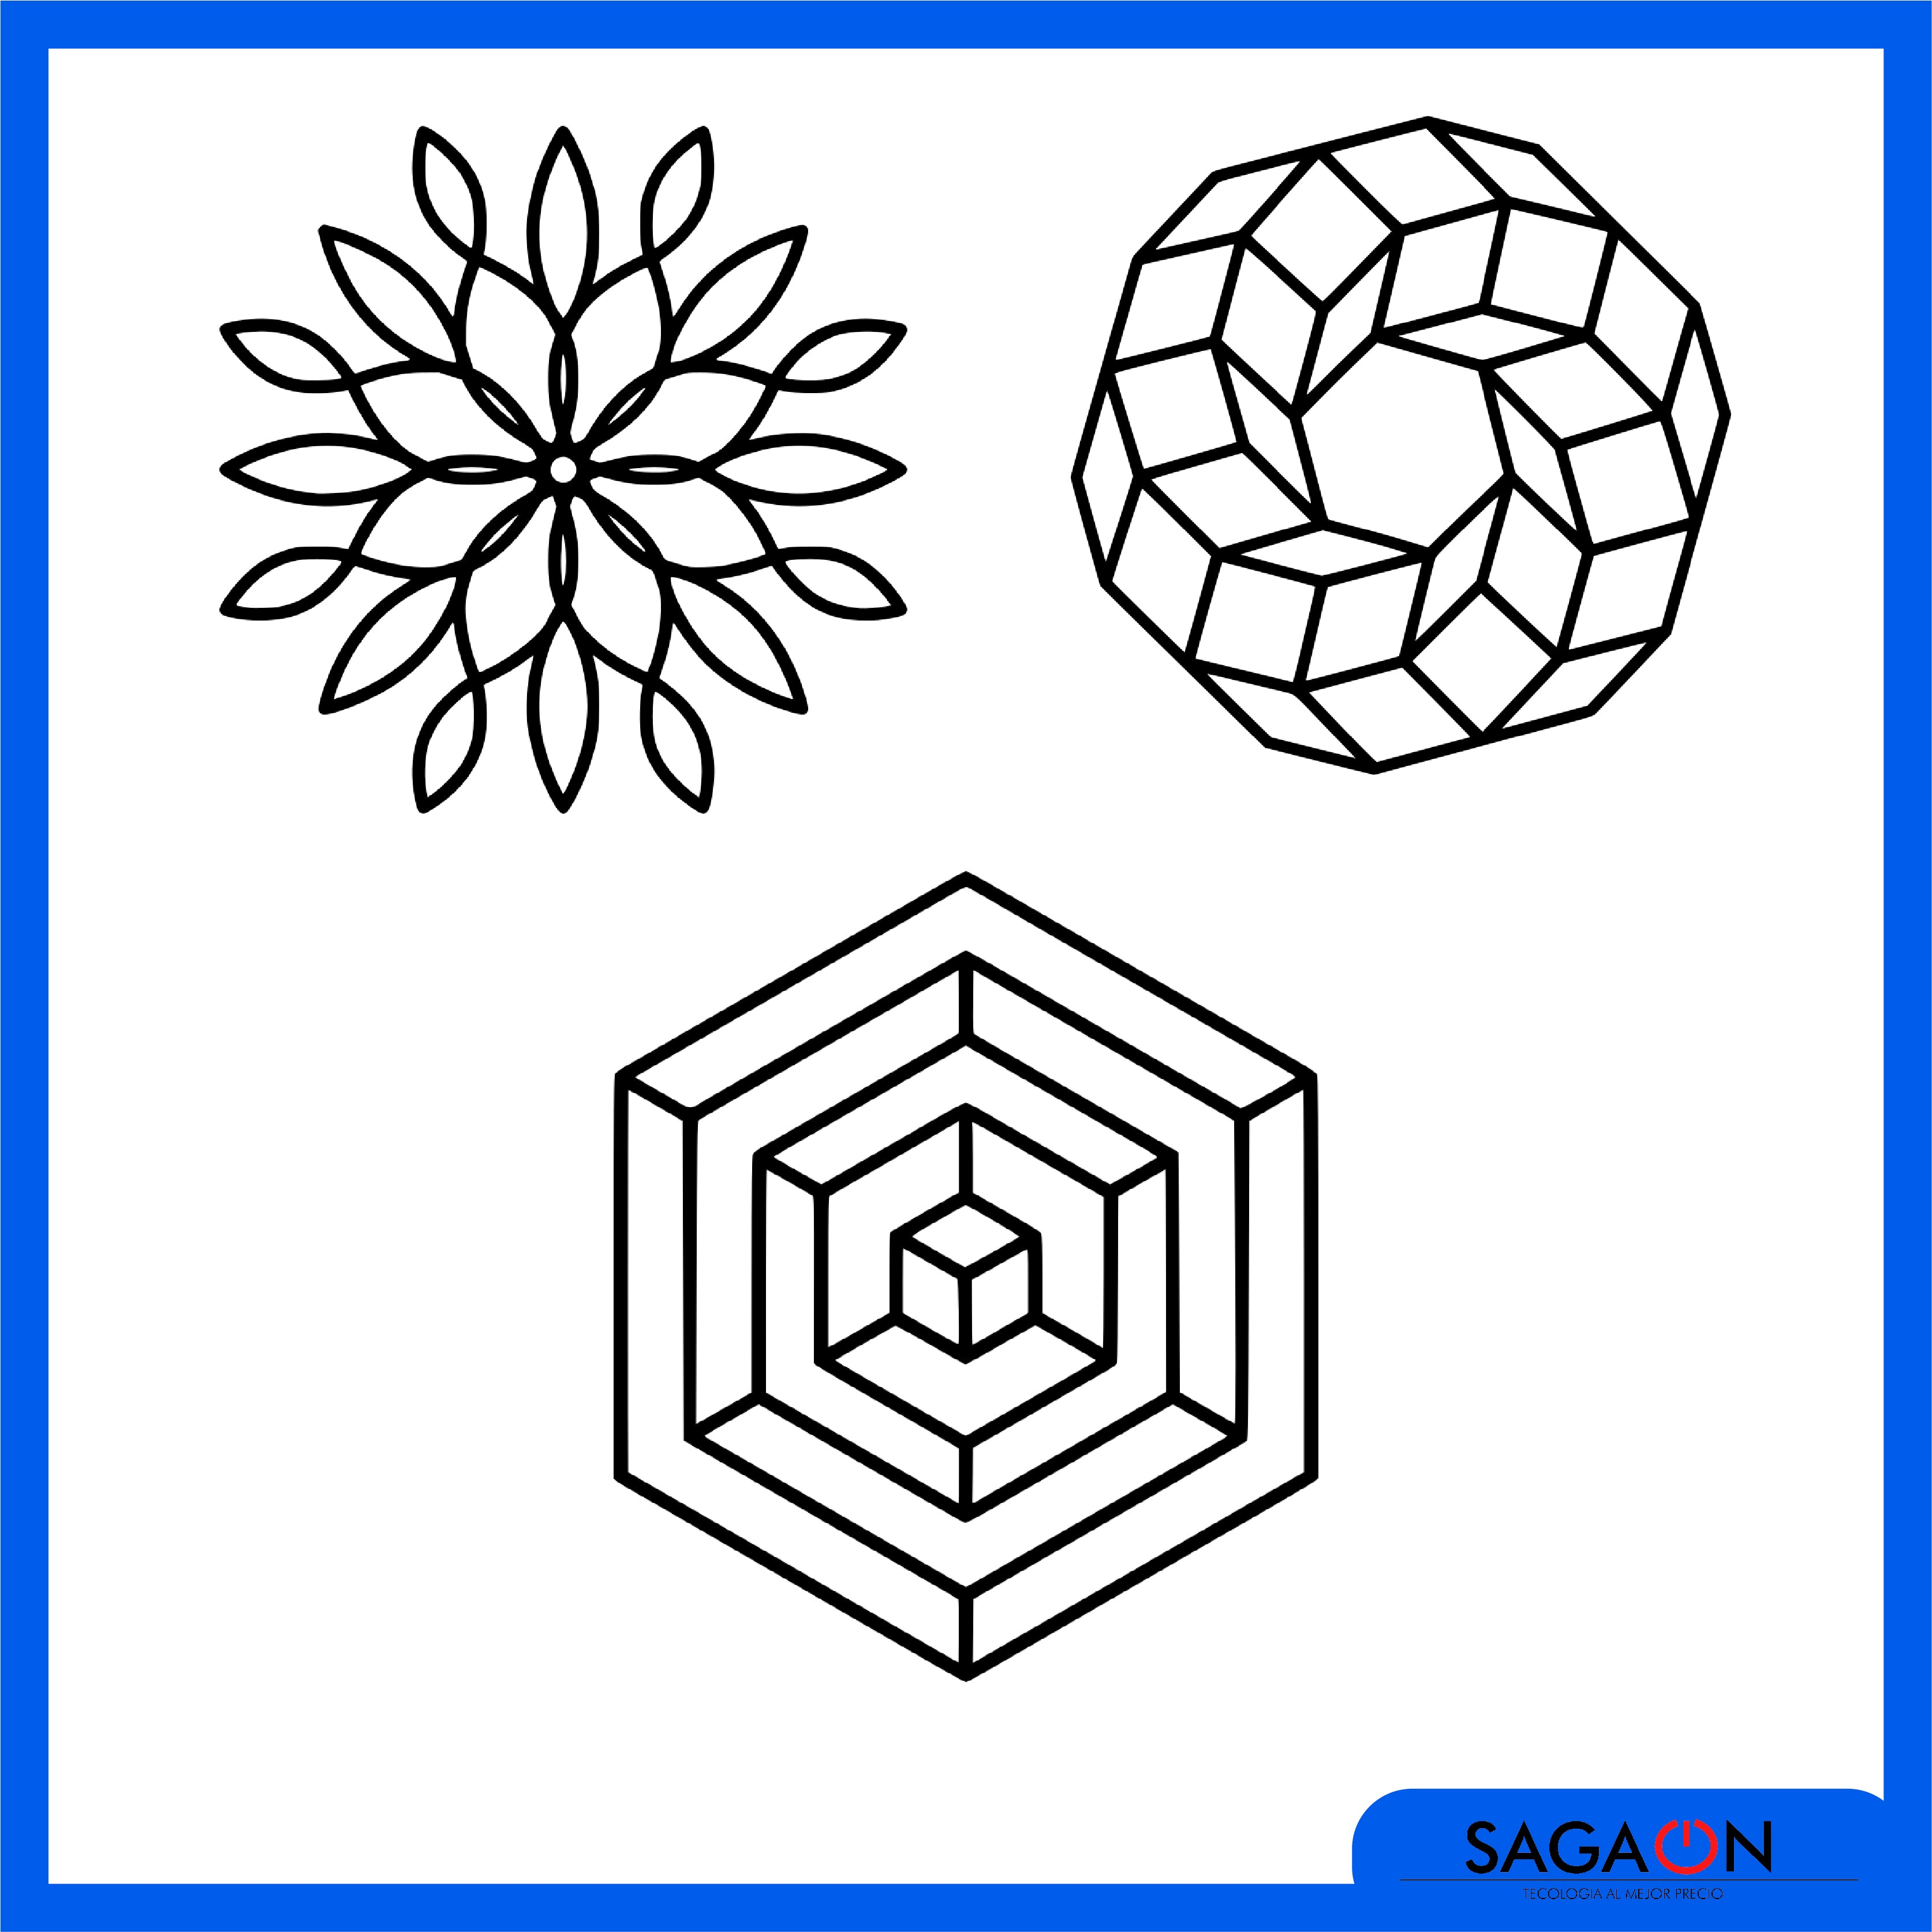 Diseños de figuras geometricas complejas — Sagaon S.A. de C.V.